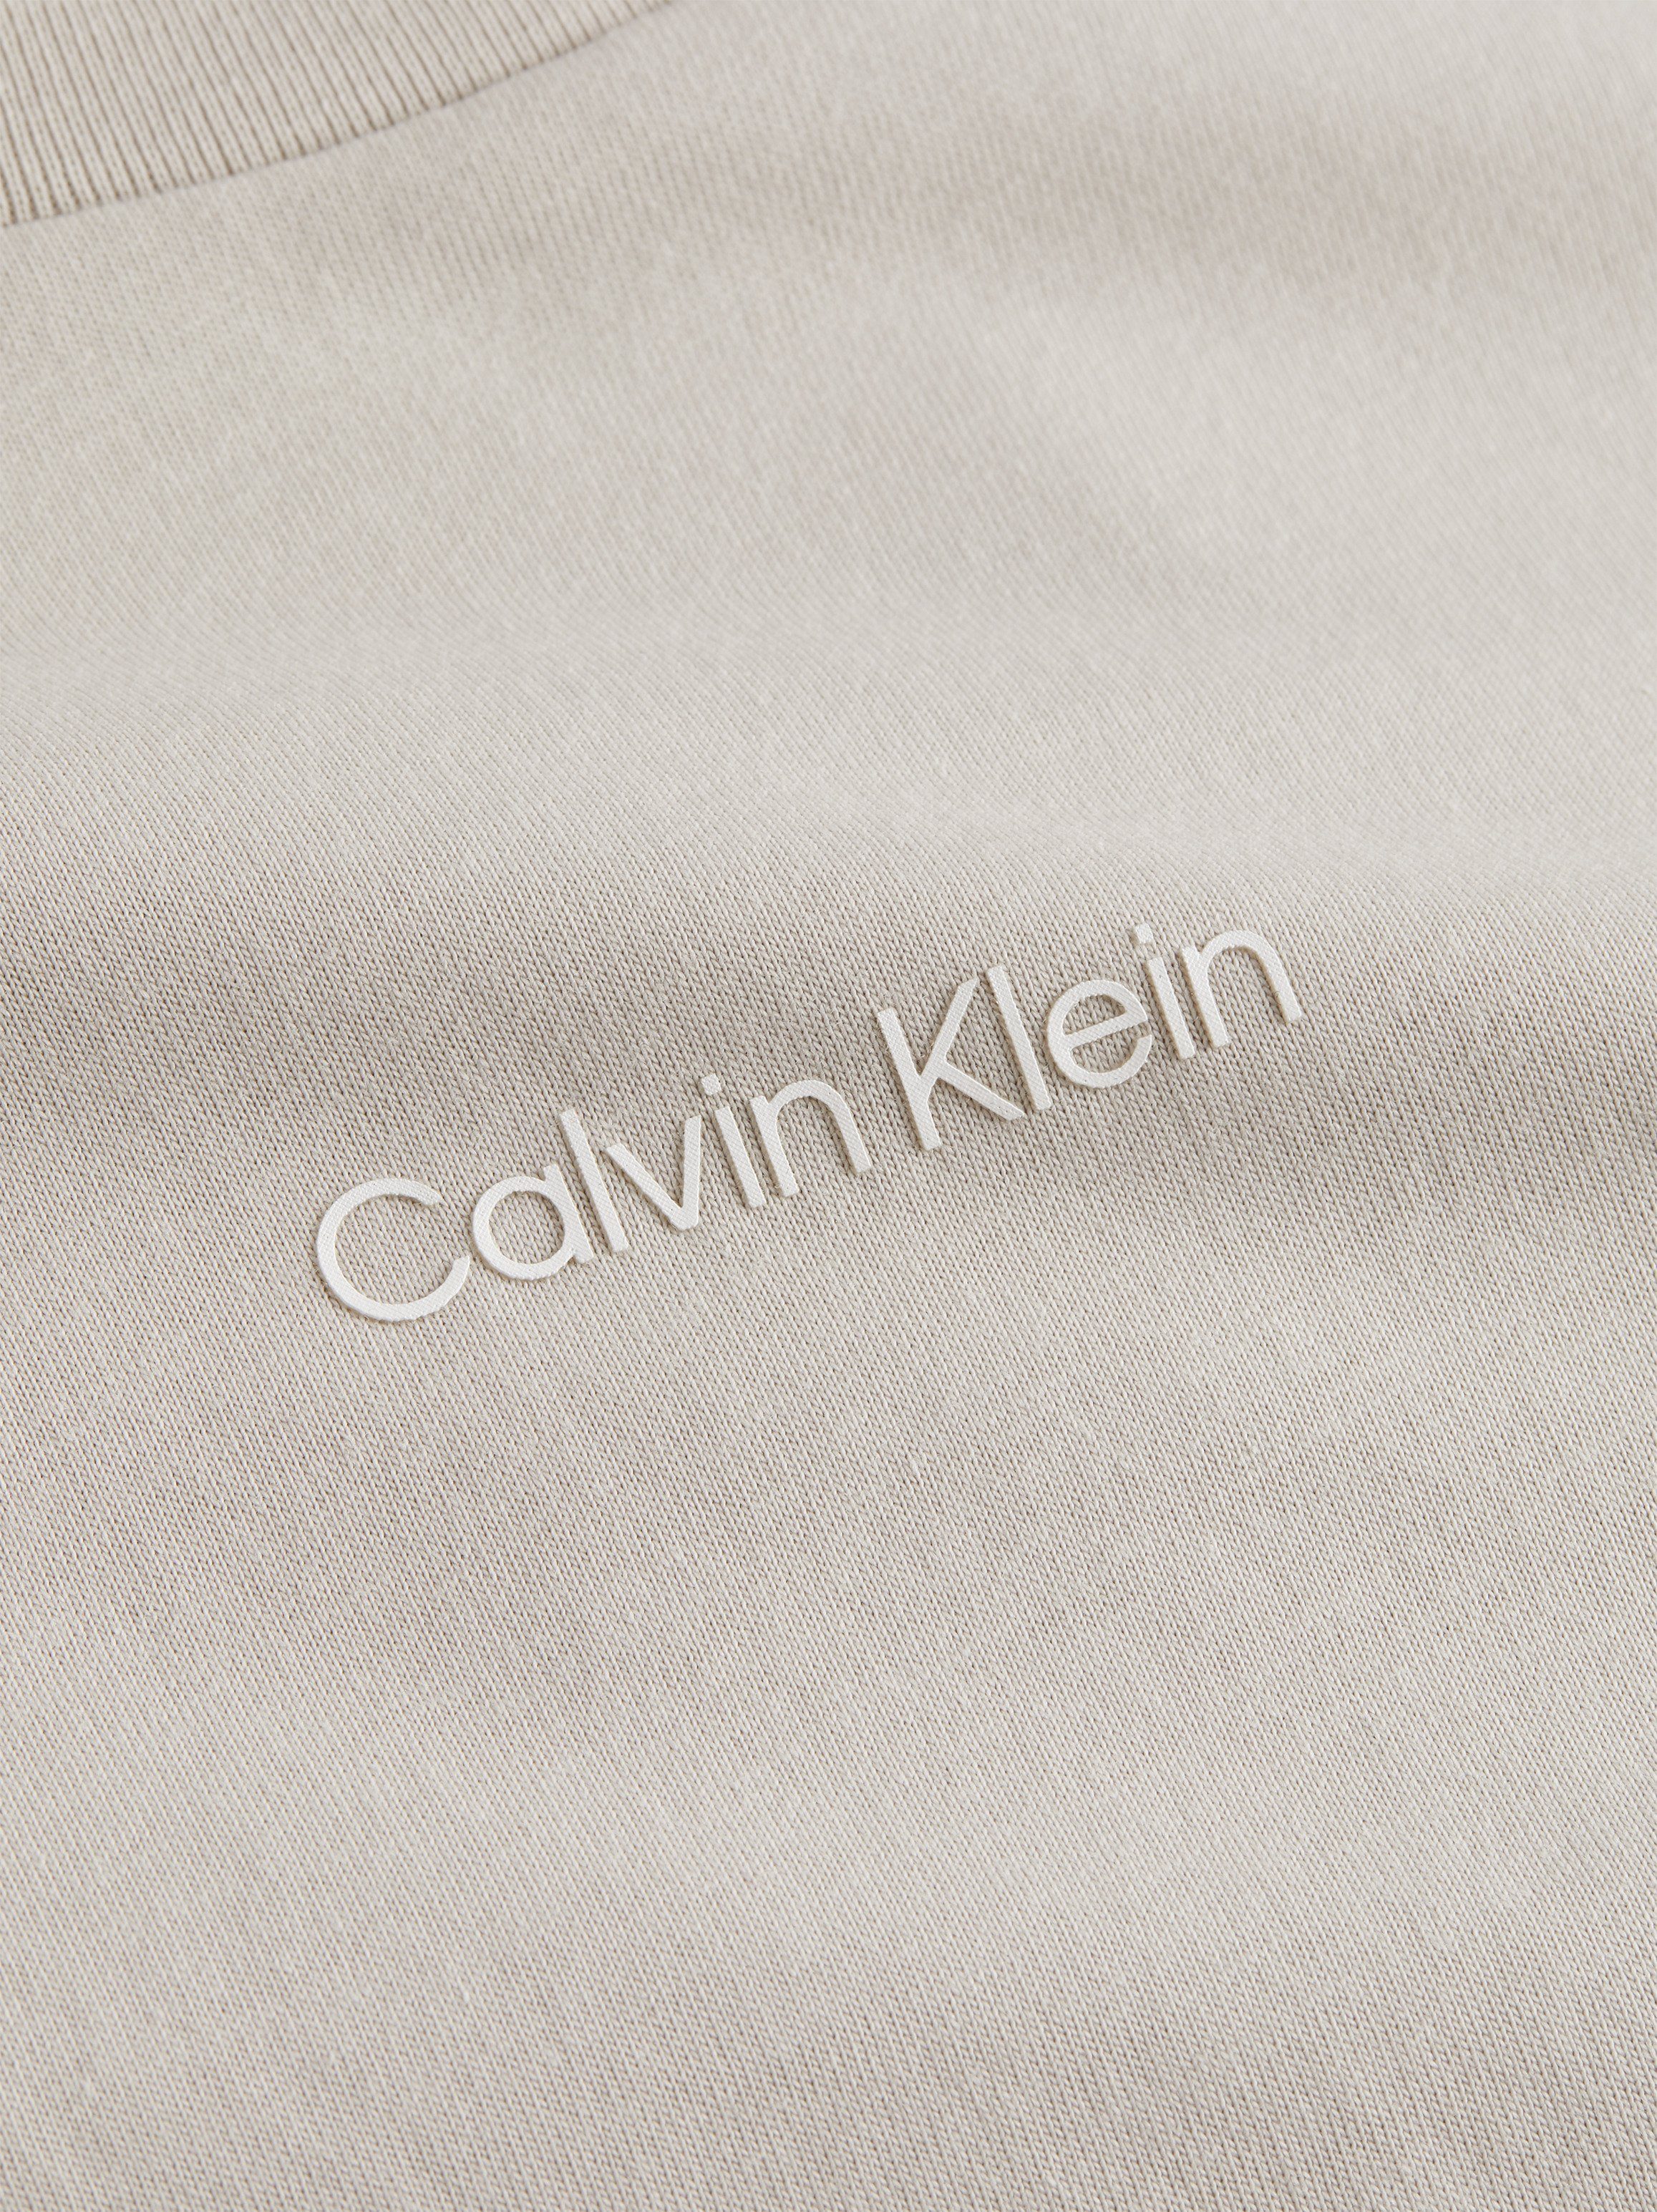 Gray Calvin MICRO reiner T-SHIRT Silver LOGO Baumwolle T-Shirt aus Klein